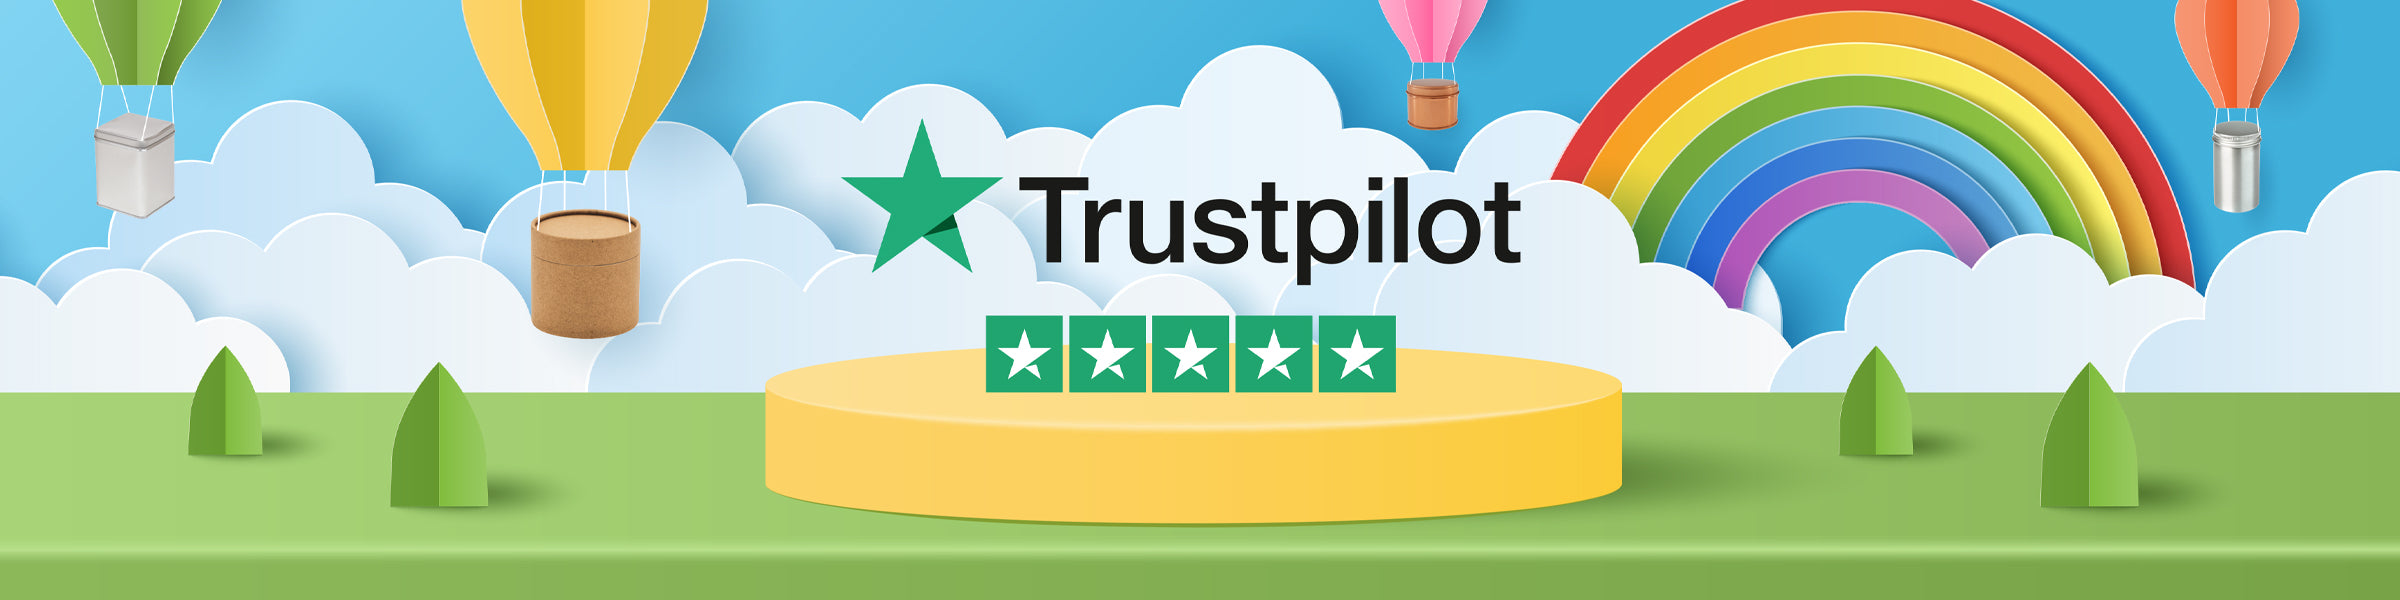 Cinq étoiles sur Trustpilot entouré de boîtes et de tubes en carton livrés par une montgolfière.